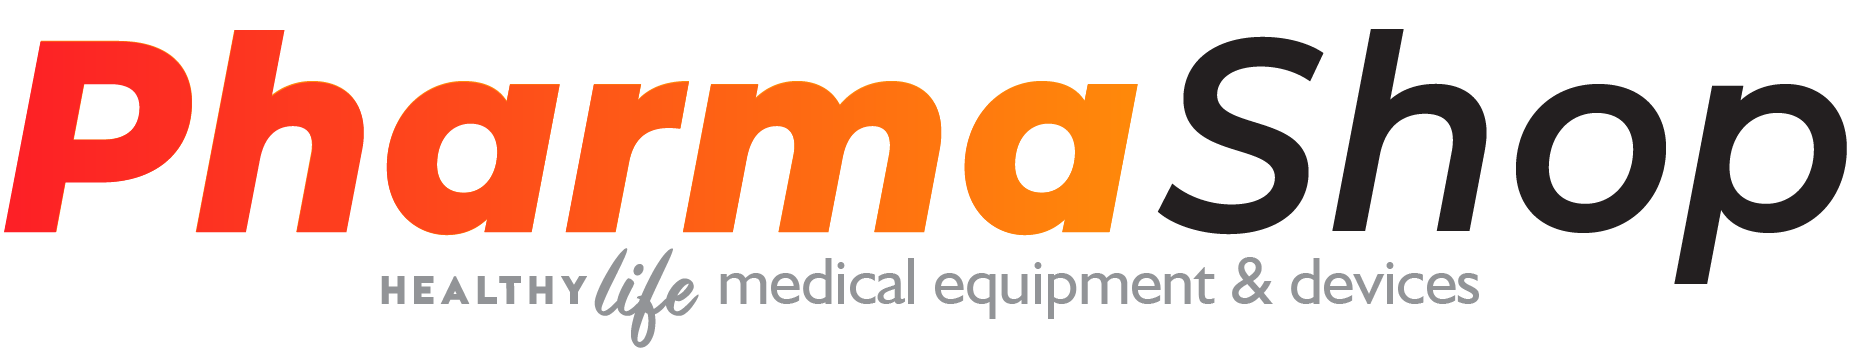 Pharma Shop Logo-01-01